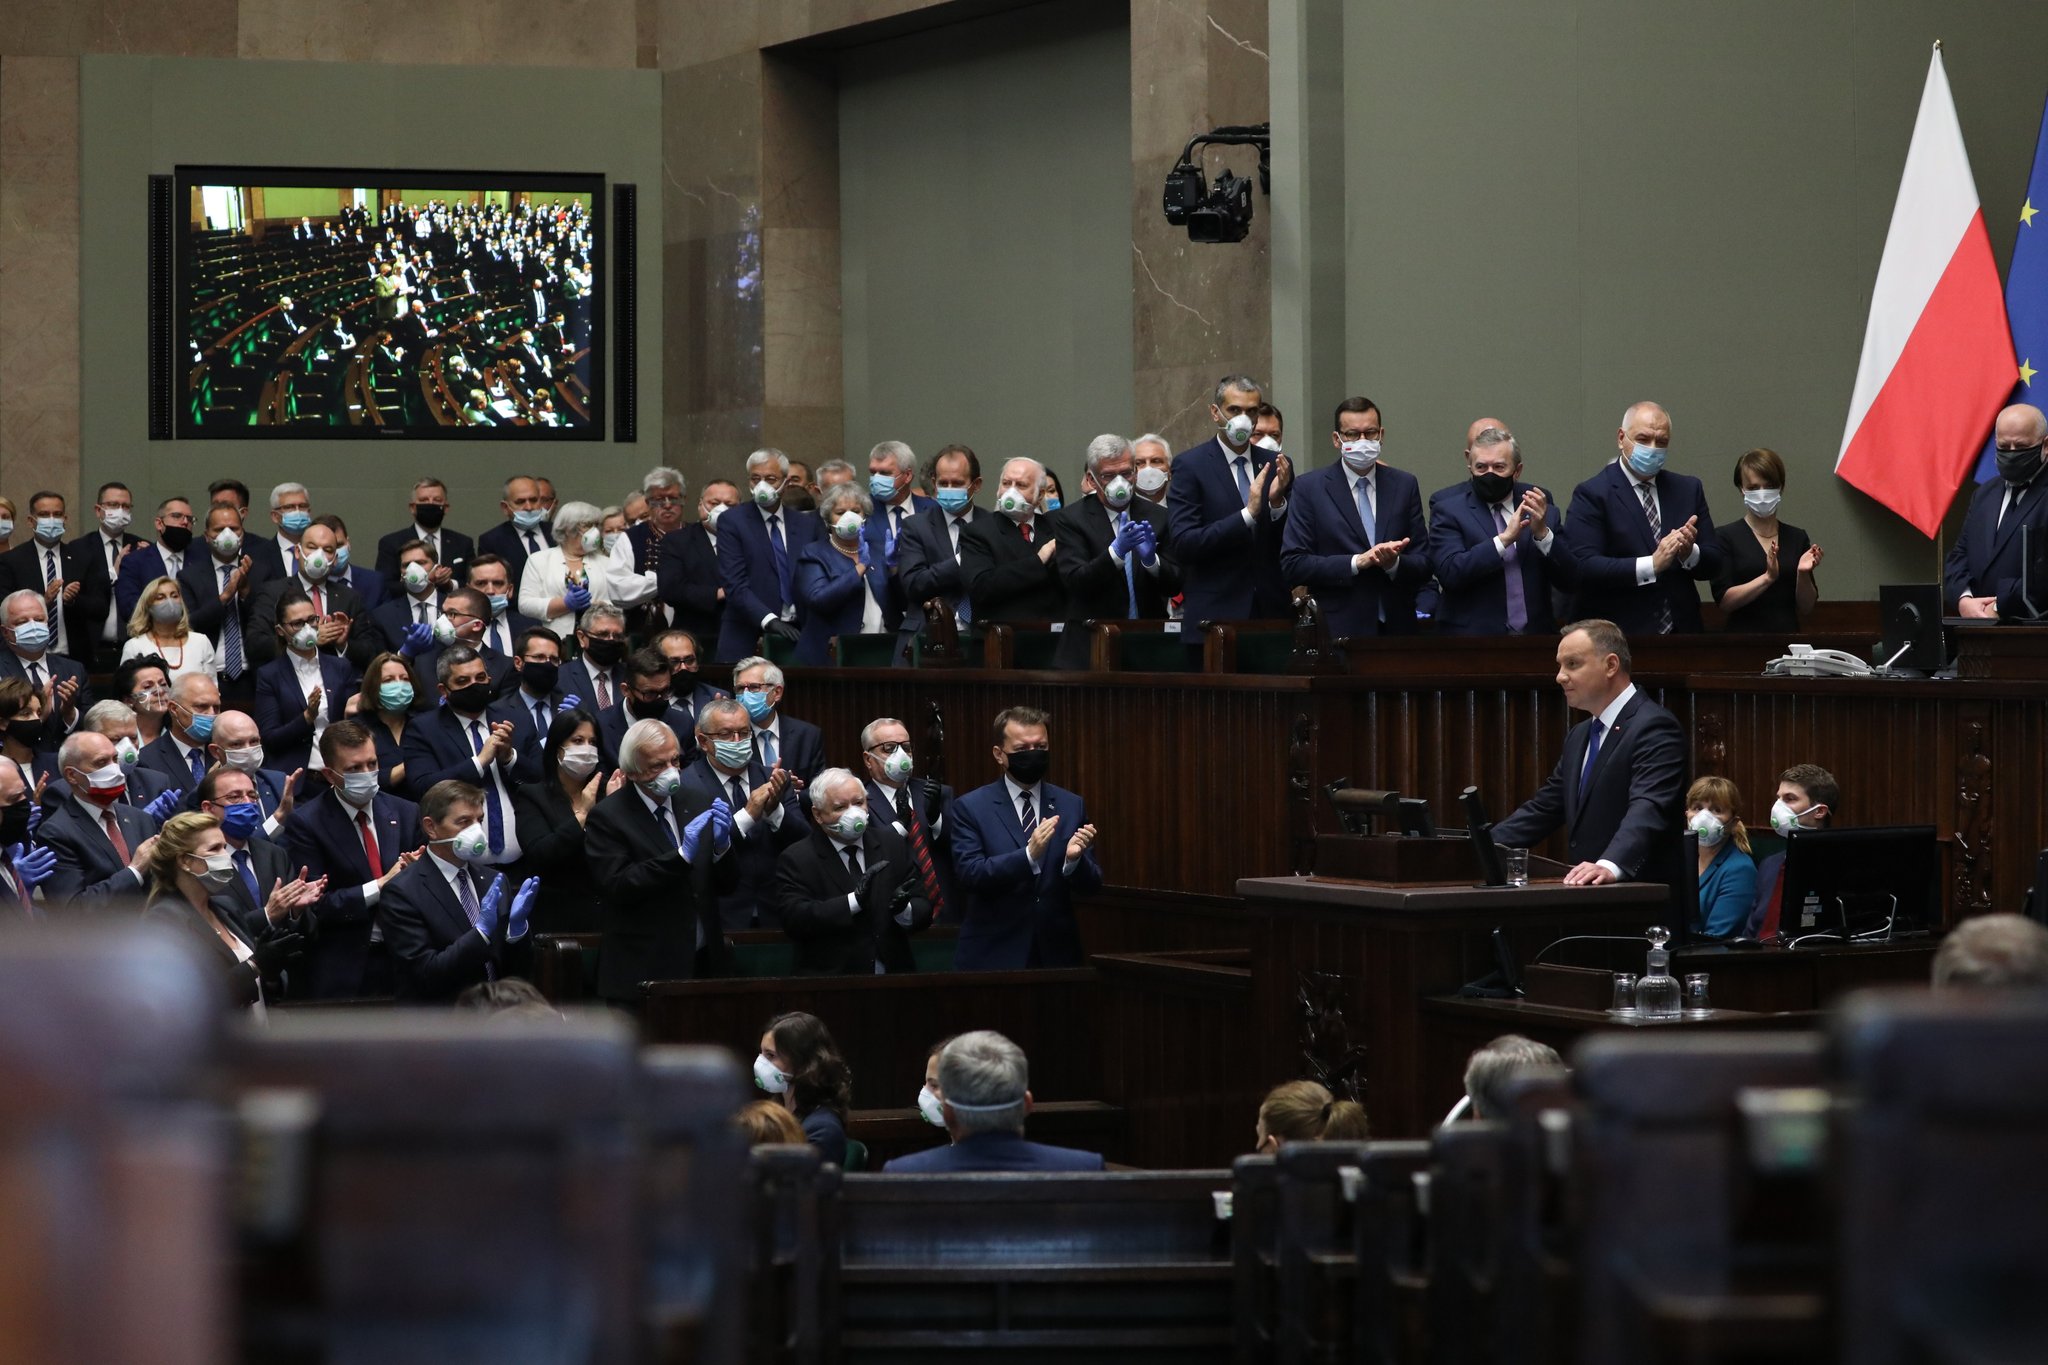  安杰伊·杜达连任波兰总统宣誓就职 正式第二个五年总统任期